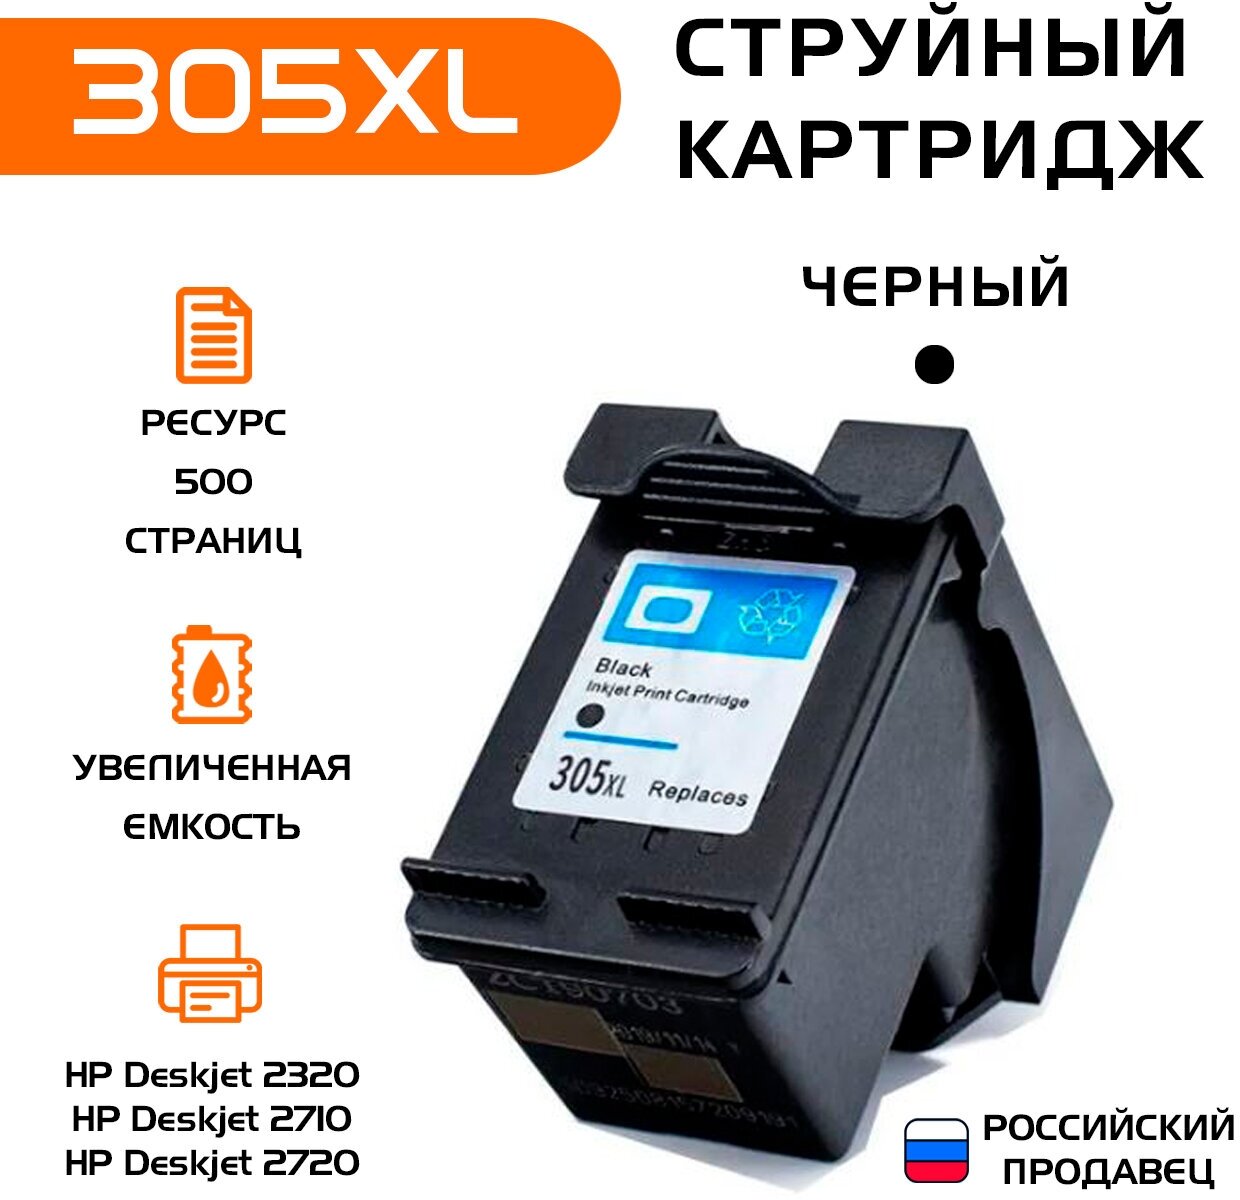 Картридж hp 305 xl, совместимый, черный, струйный, для принтера HP Deskjet 2320/2710/2720